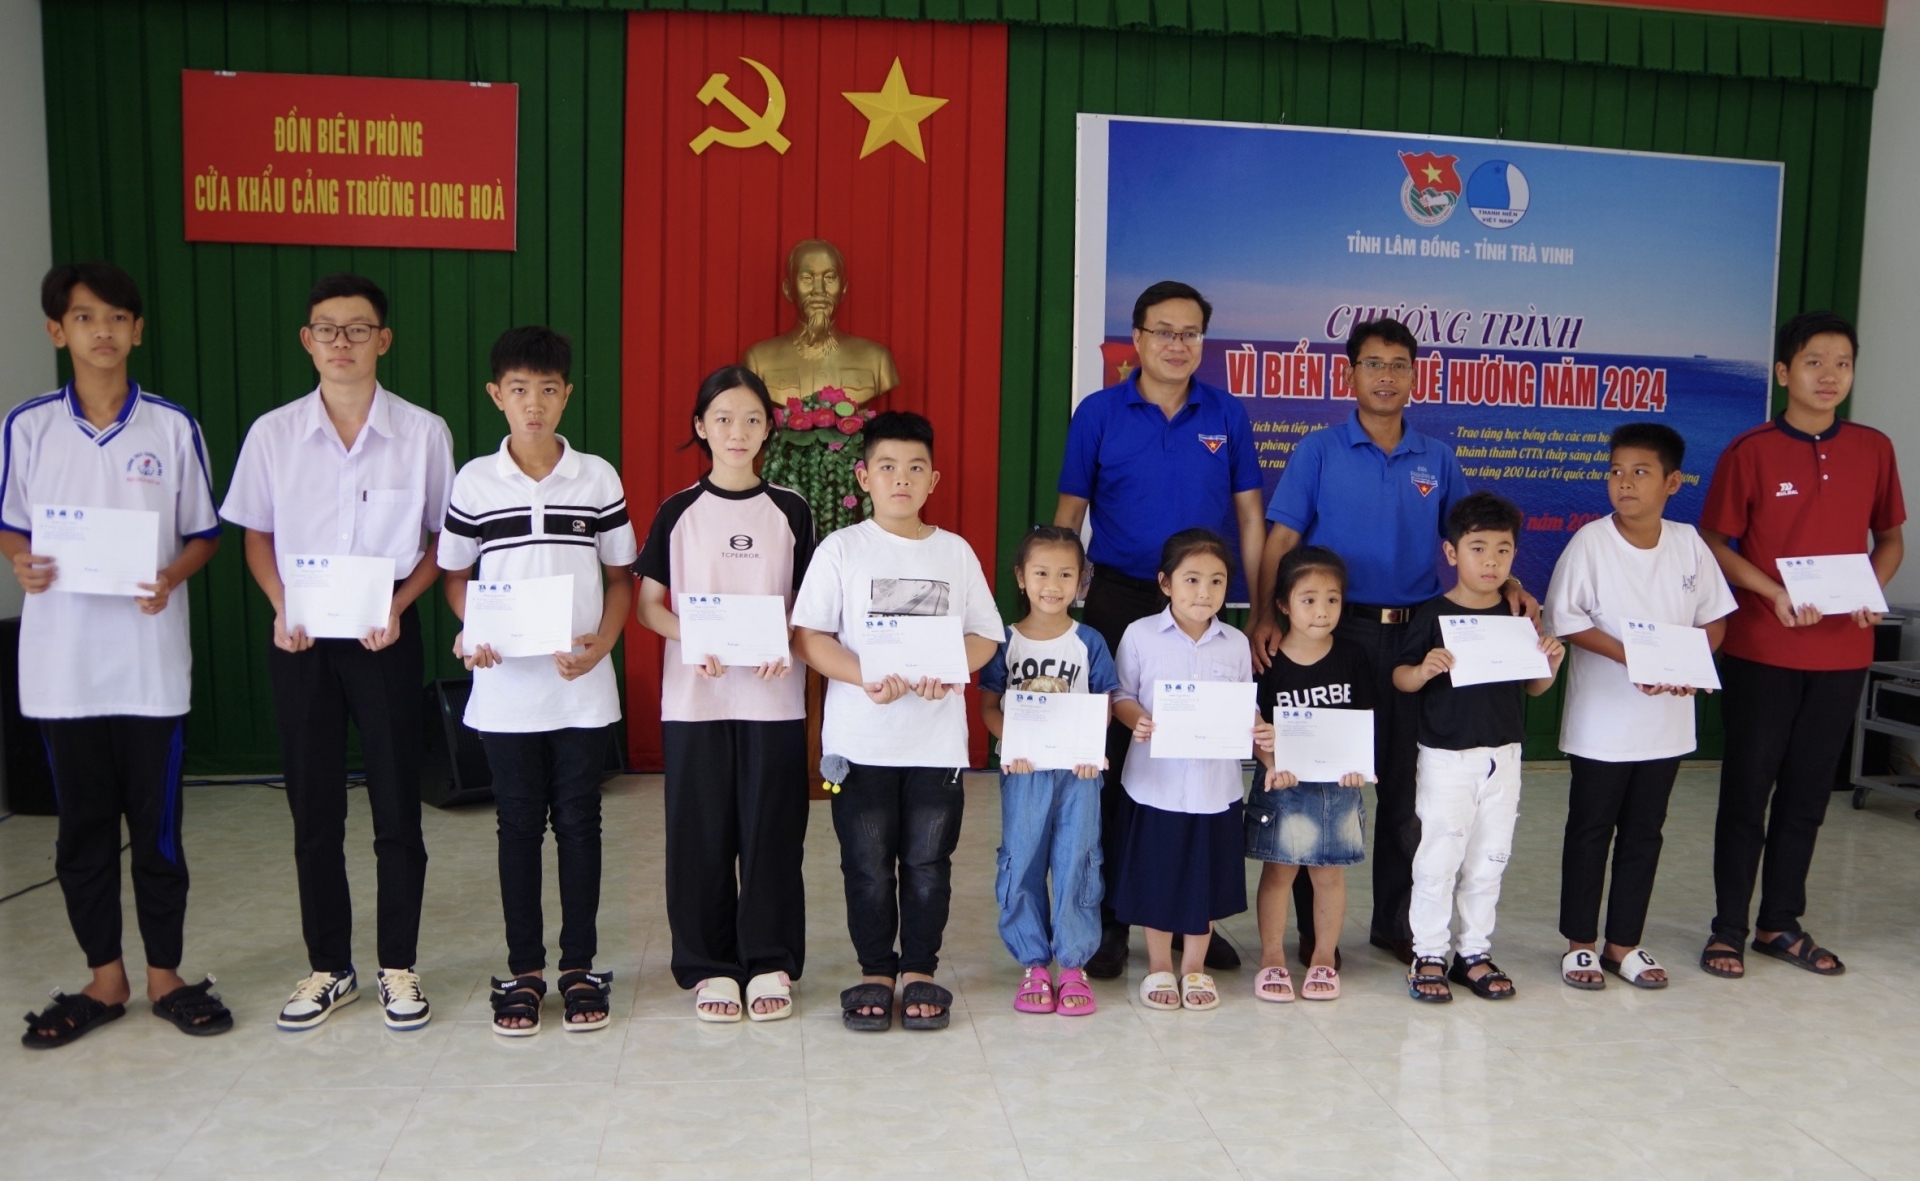 Đoàn Lâm Đồng trao tặng học bổng cho các em học sinh khó khăn thị xã Duyên Hải, tỉnh Trà Vinh